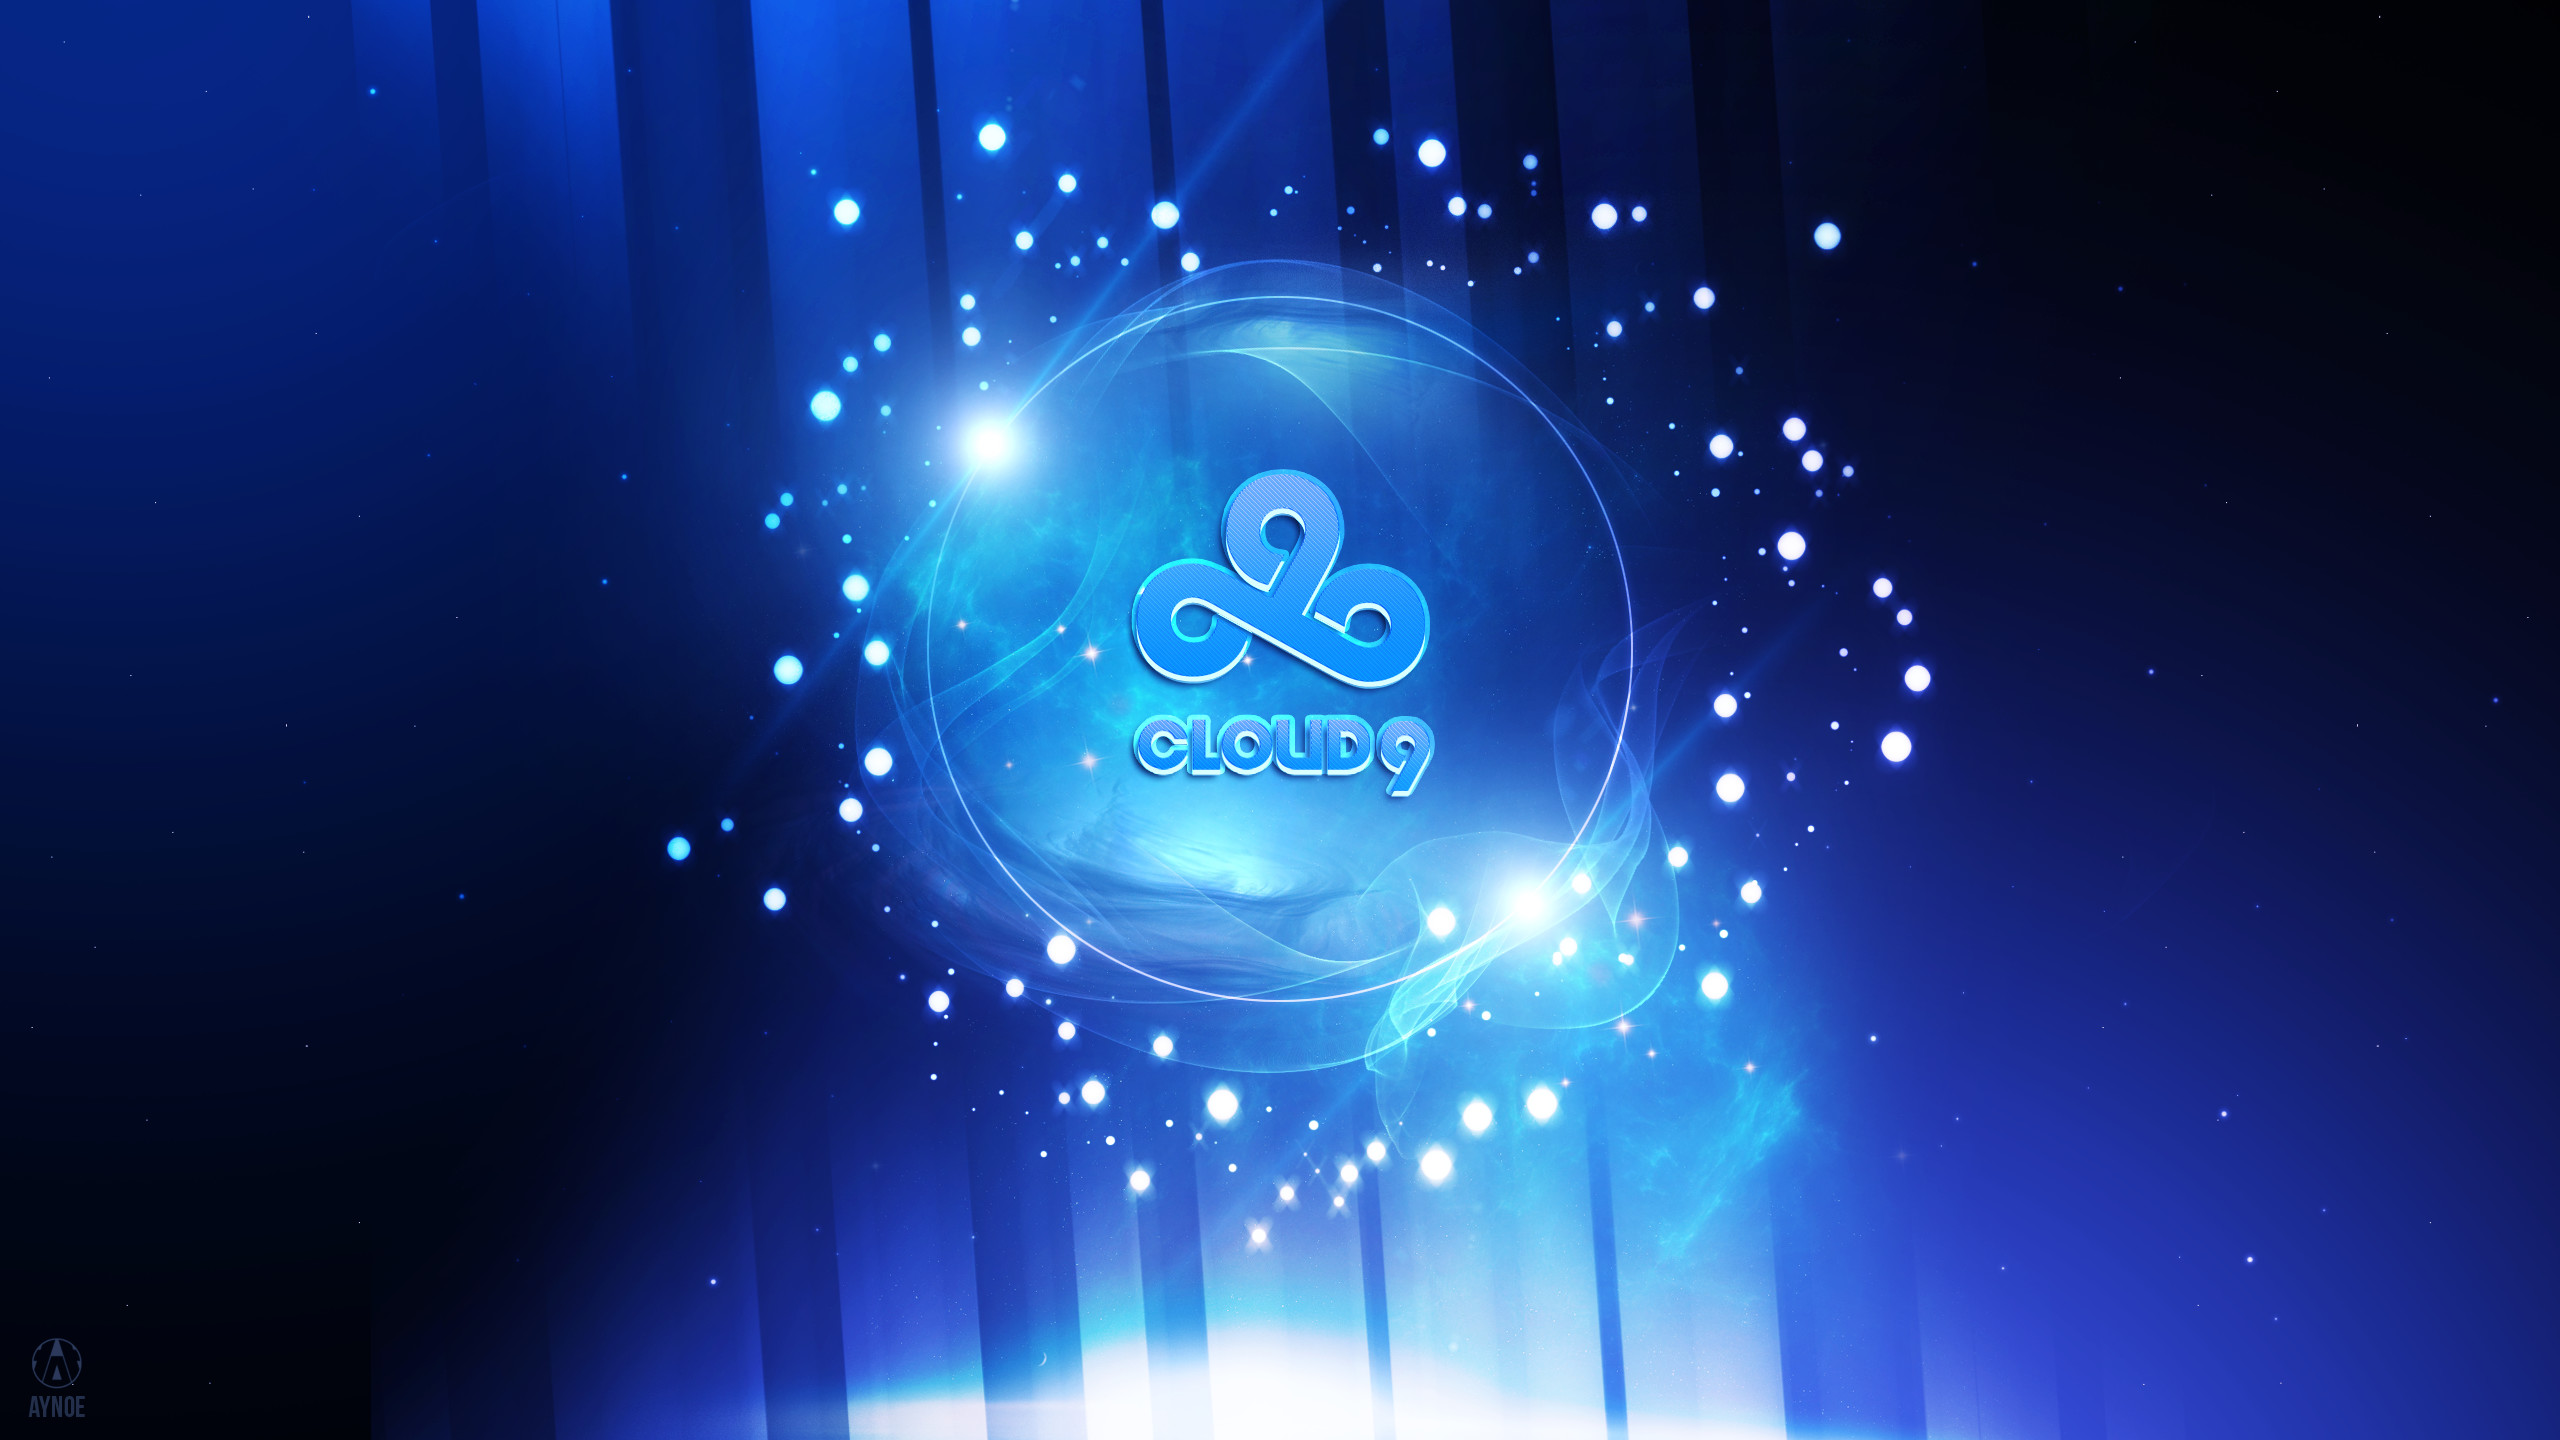 2560x1440 ... Cloud9 Wallpaper Logo - League of Legends by Aynoe